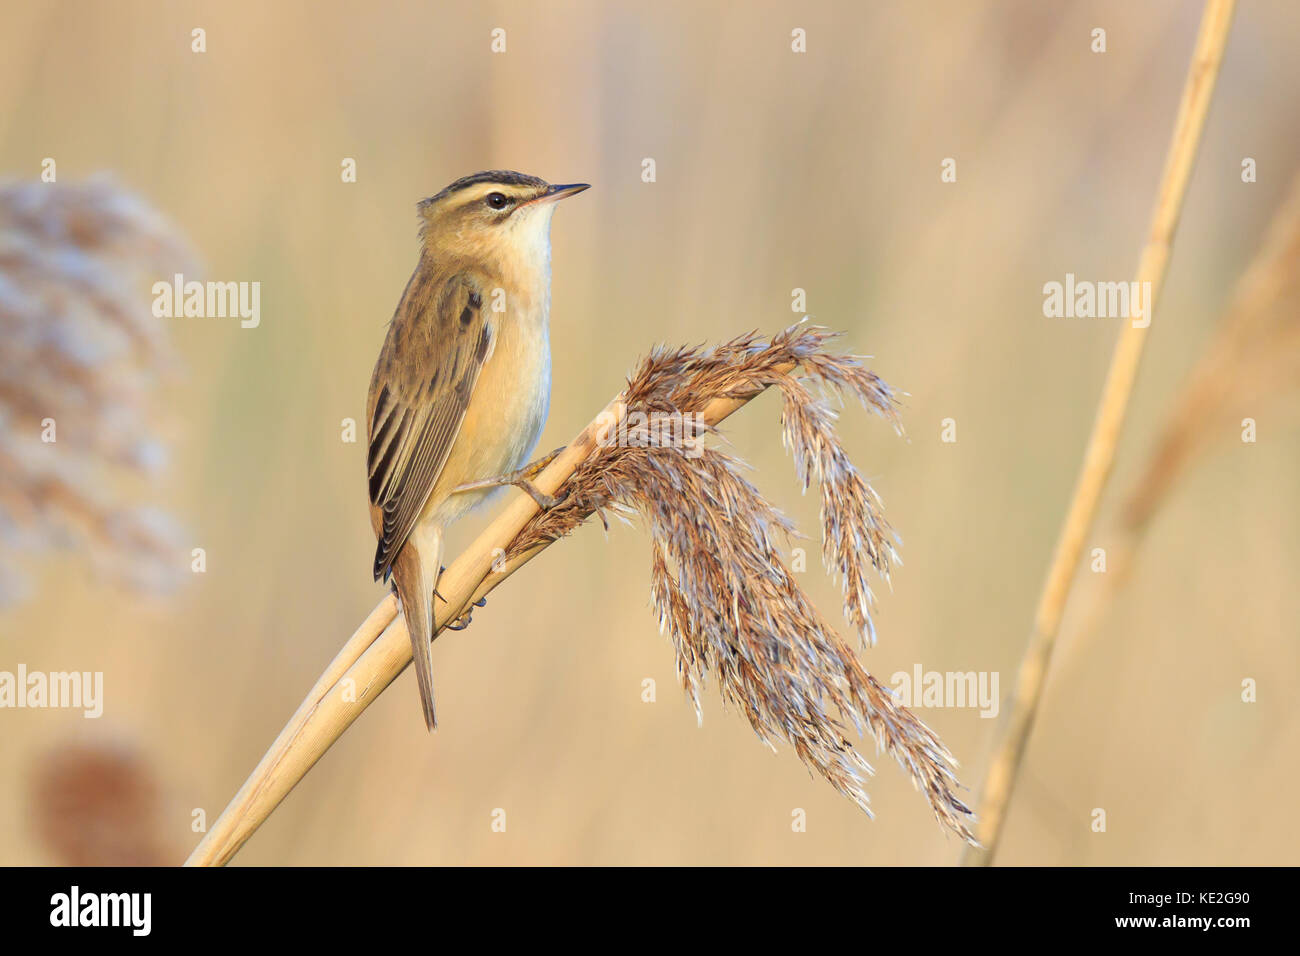 Primo piano di una singola sedge trillo bird, acrocephalus schoenobaenus, cantando per attirare una femmina durante la stagione riproduttiva in primavera Foto Stock